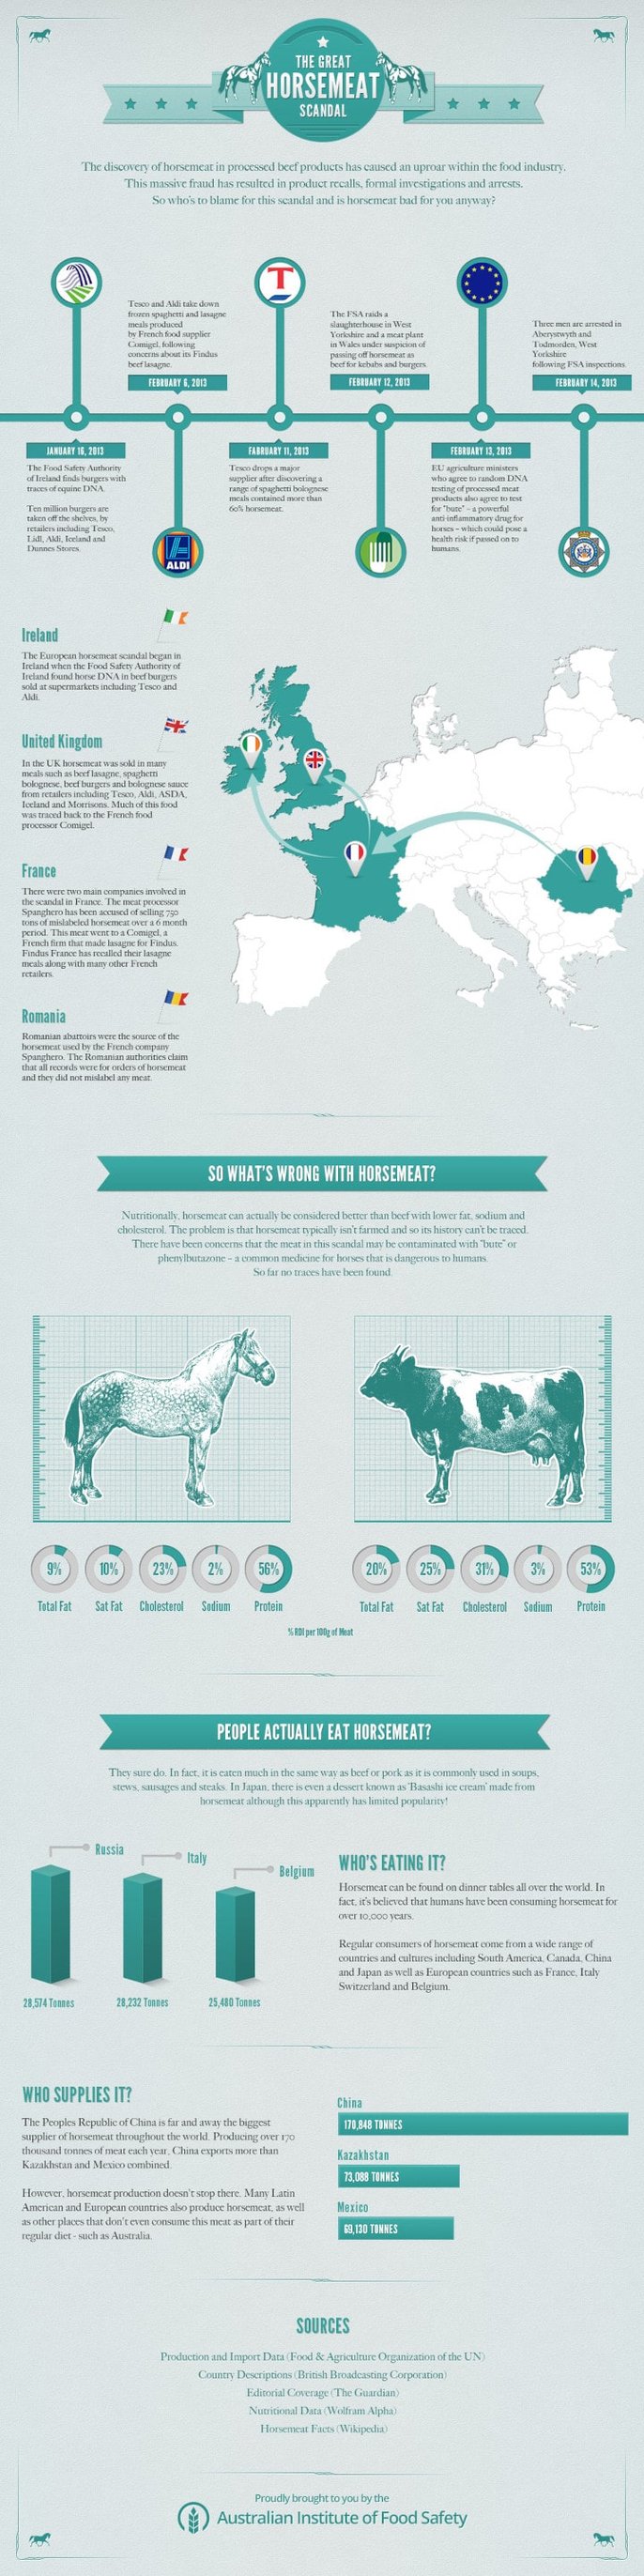 infographic-horsemeat-2 resized-min